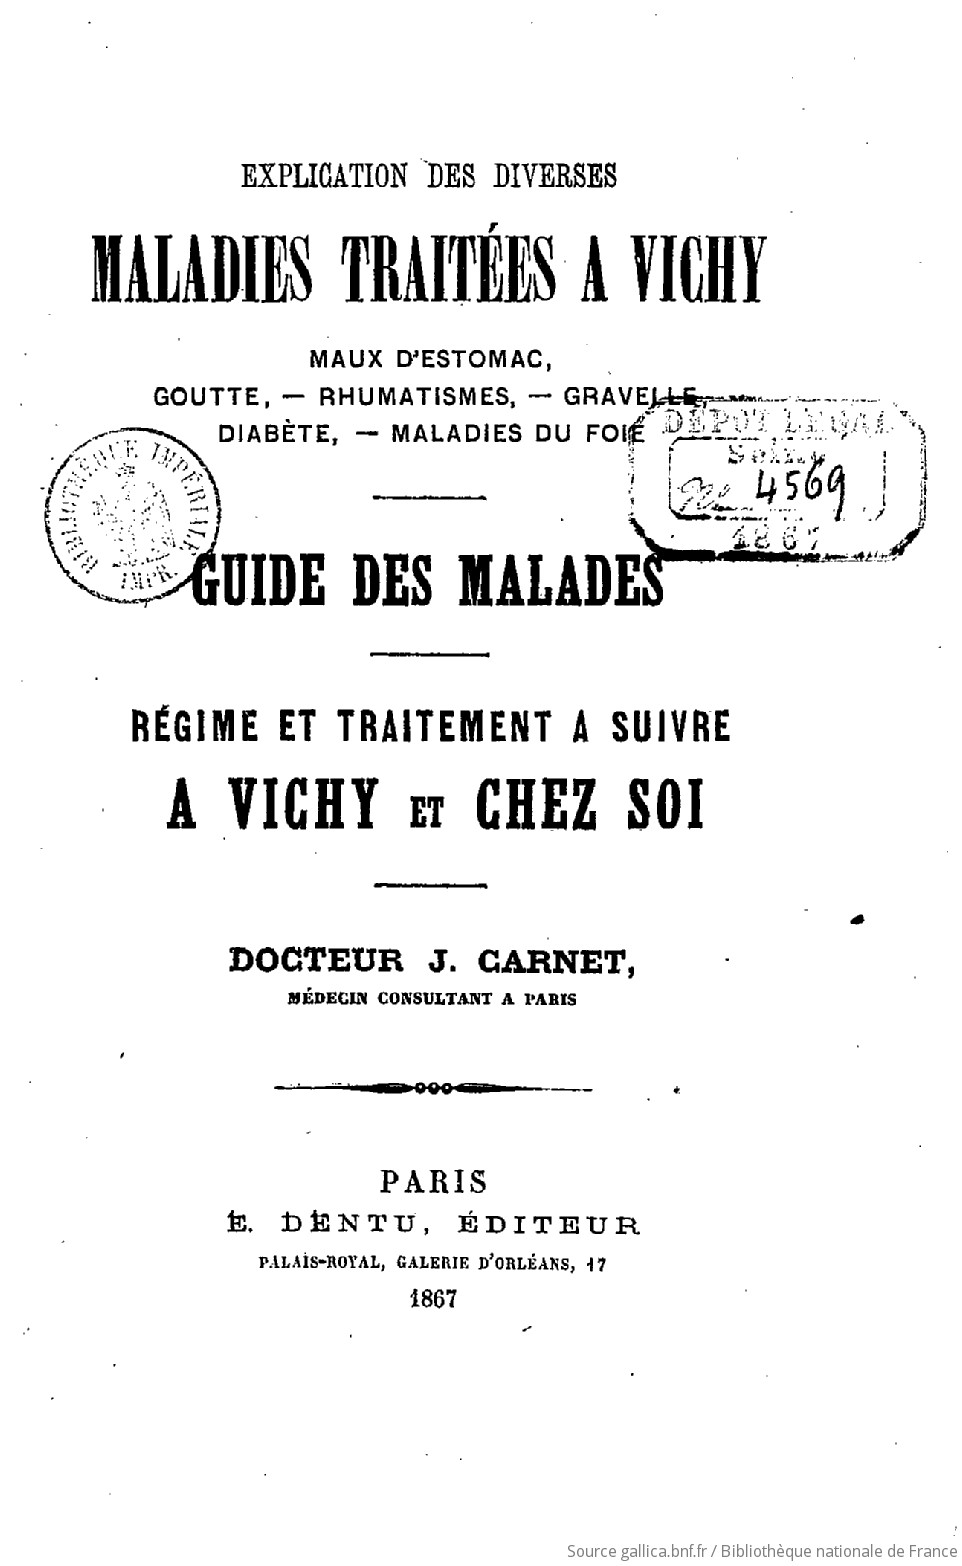 Explication des diverses maladies traitées à Vichy Guide des malades,  régime et traitement à suivre à Vichy et chez soi. Dr J. Carnet